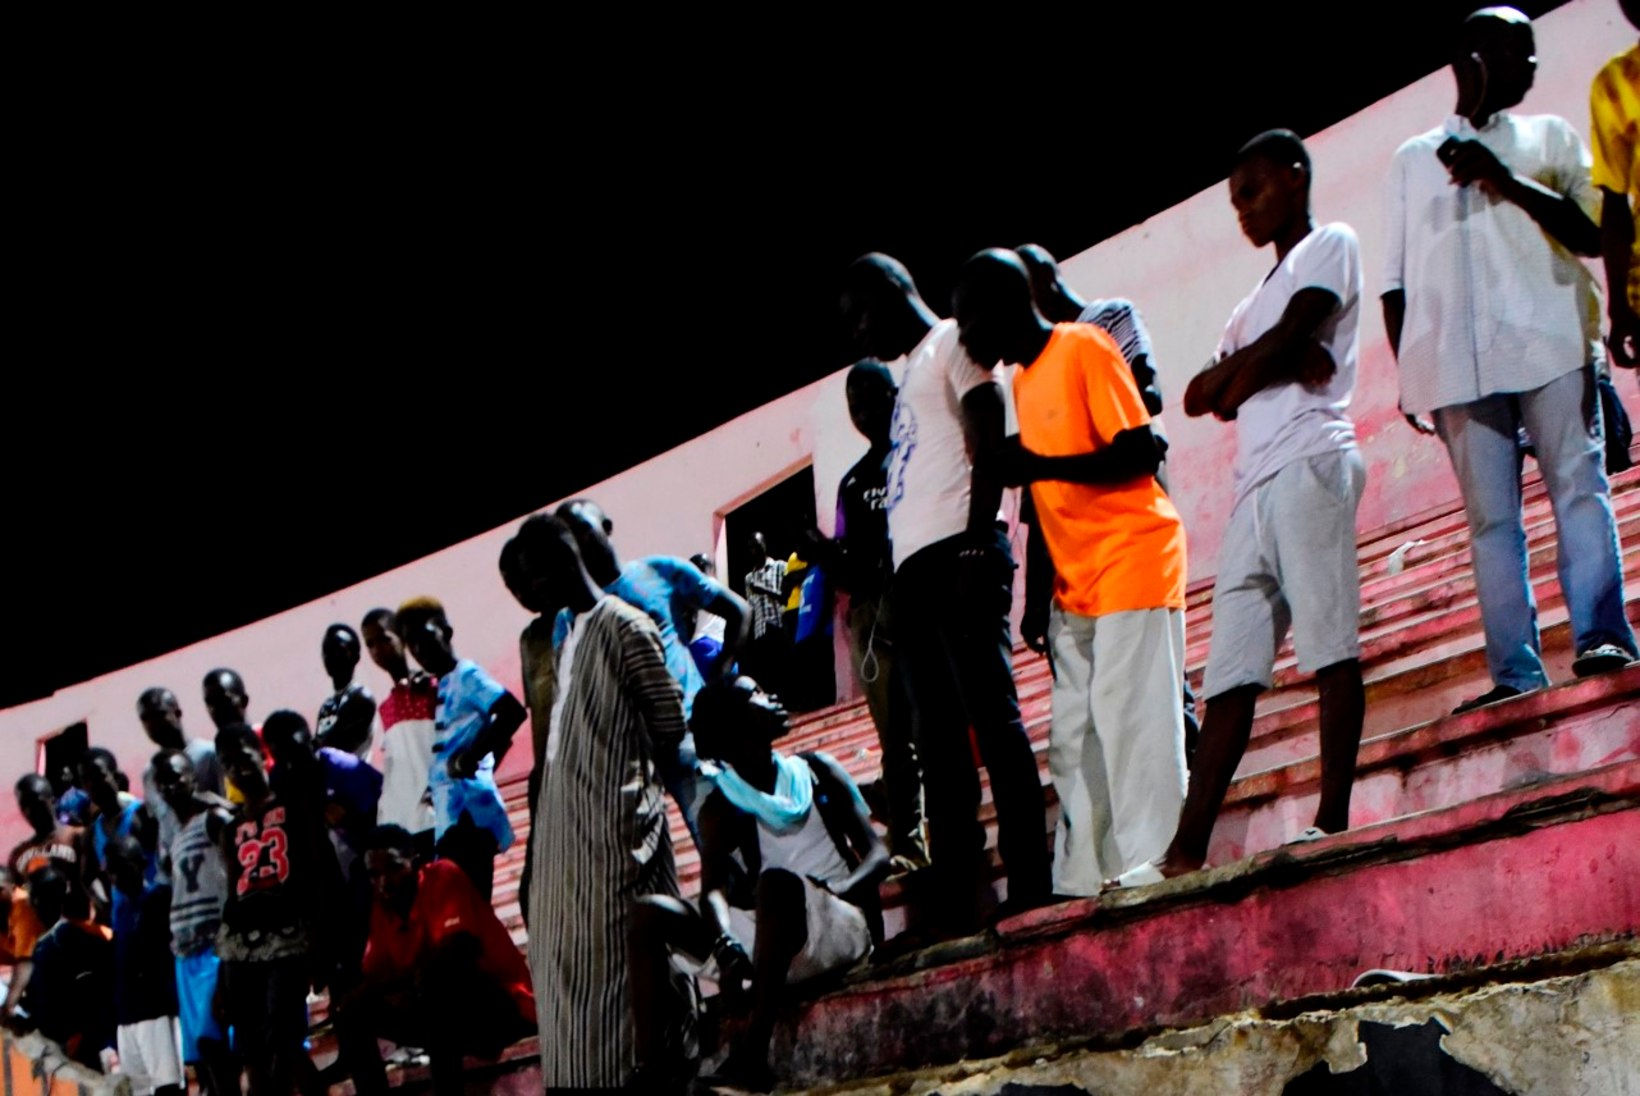 FOTOD | Hullunud Senegali jalgpallifännid põhjustasid traagilise õnnetuse